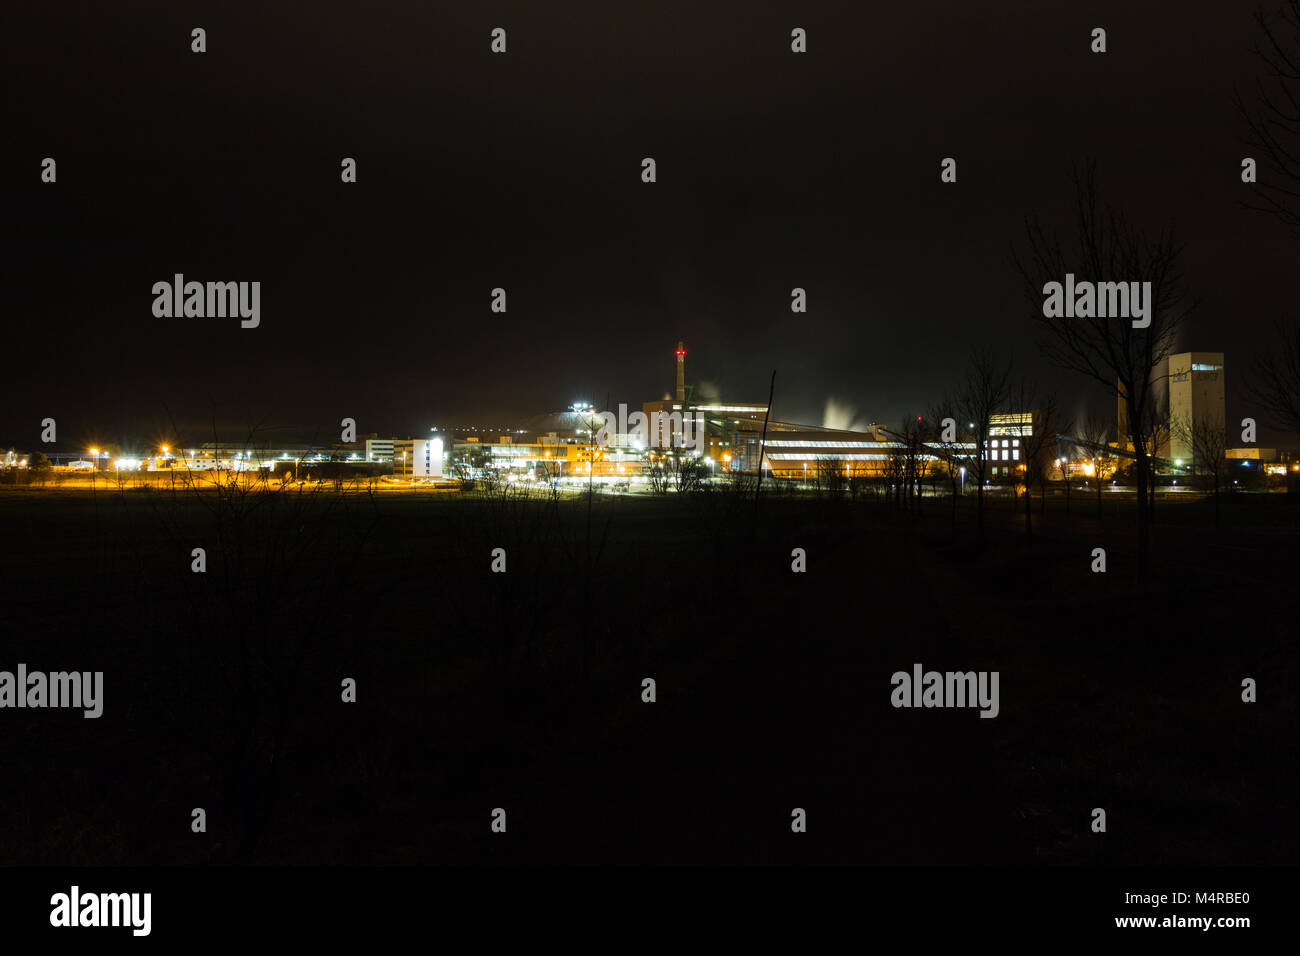 Zielitz Stockfotos und -bilder Kaufen - Alamy